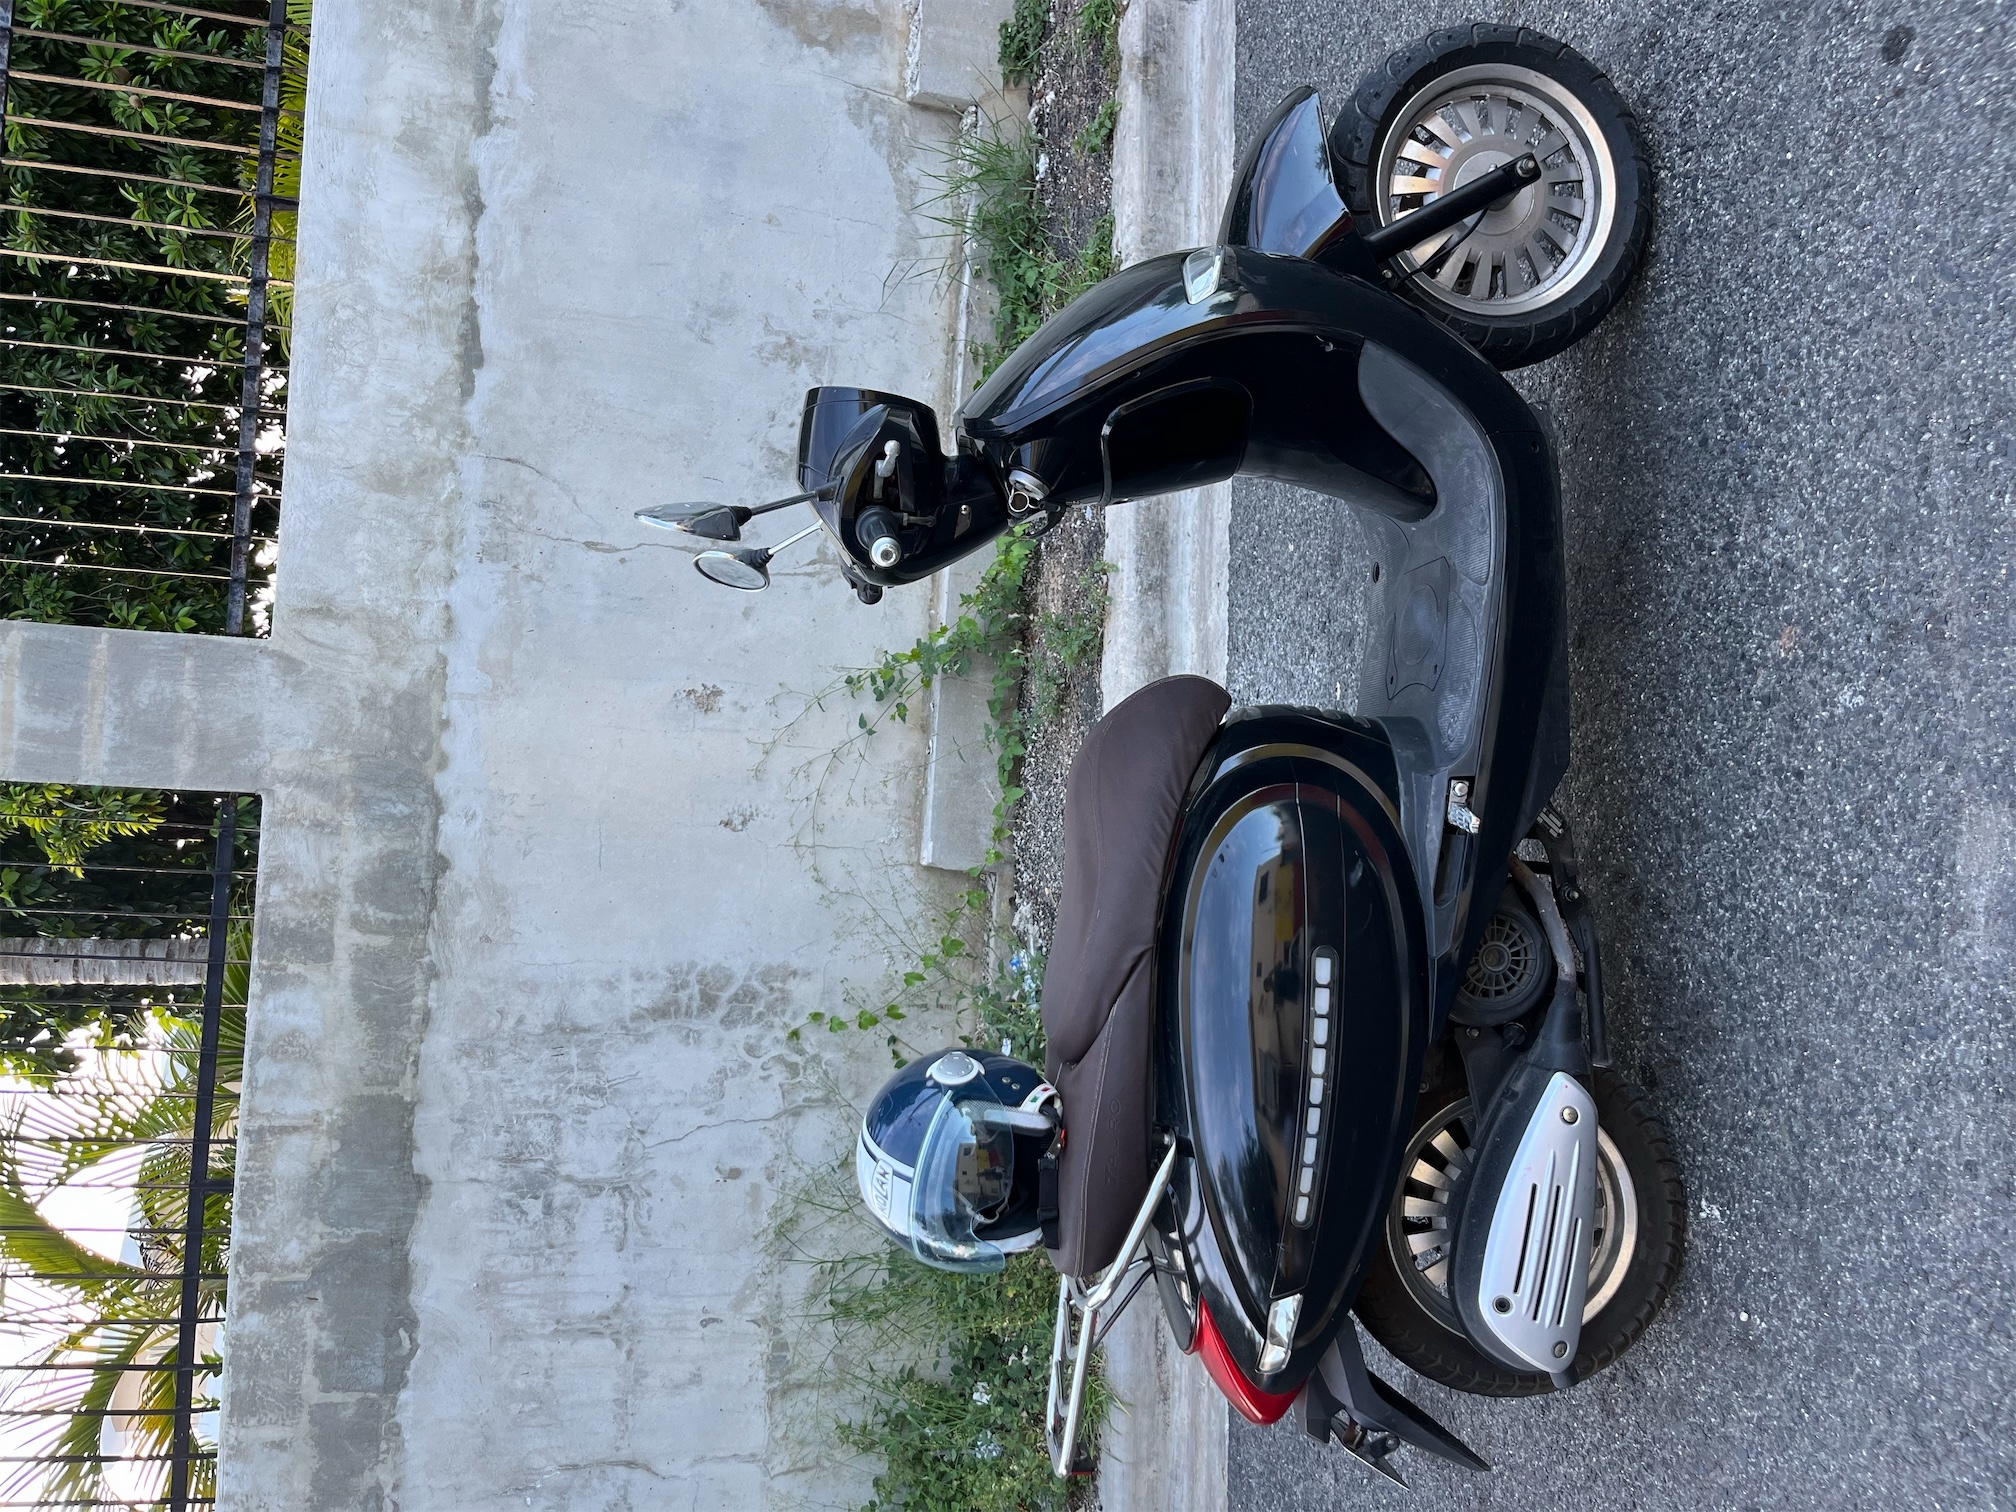 motores y pasolas - Linda moto capuchino con casco nolan.
 2